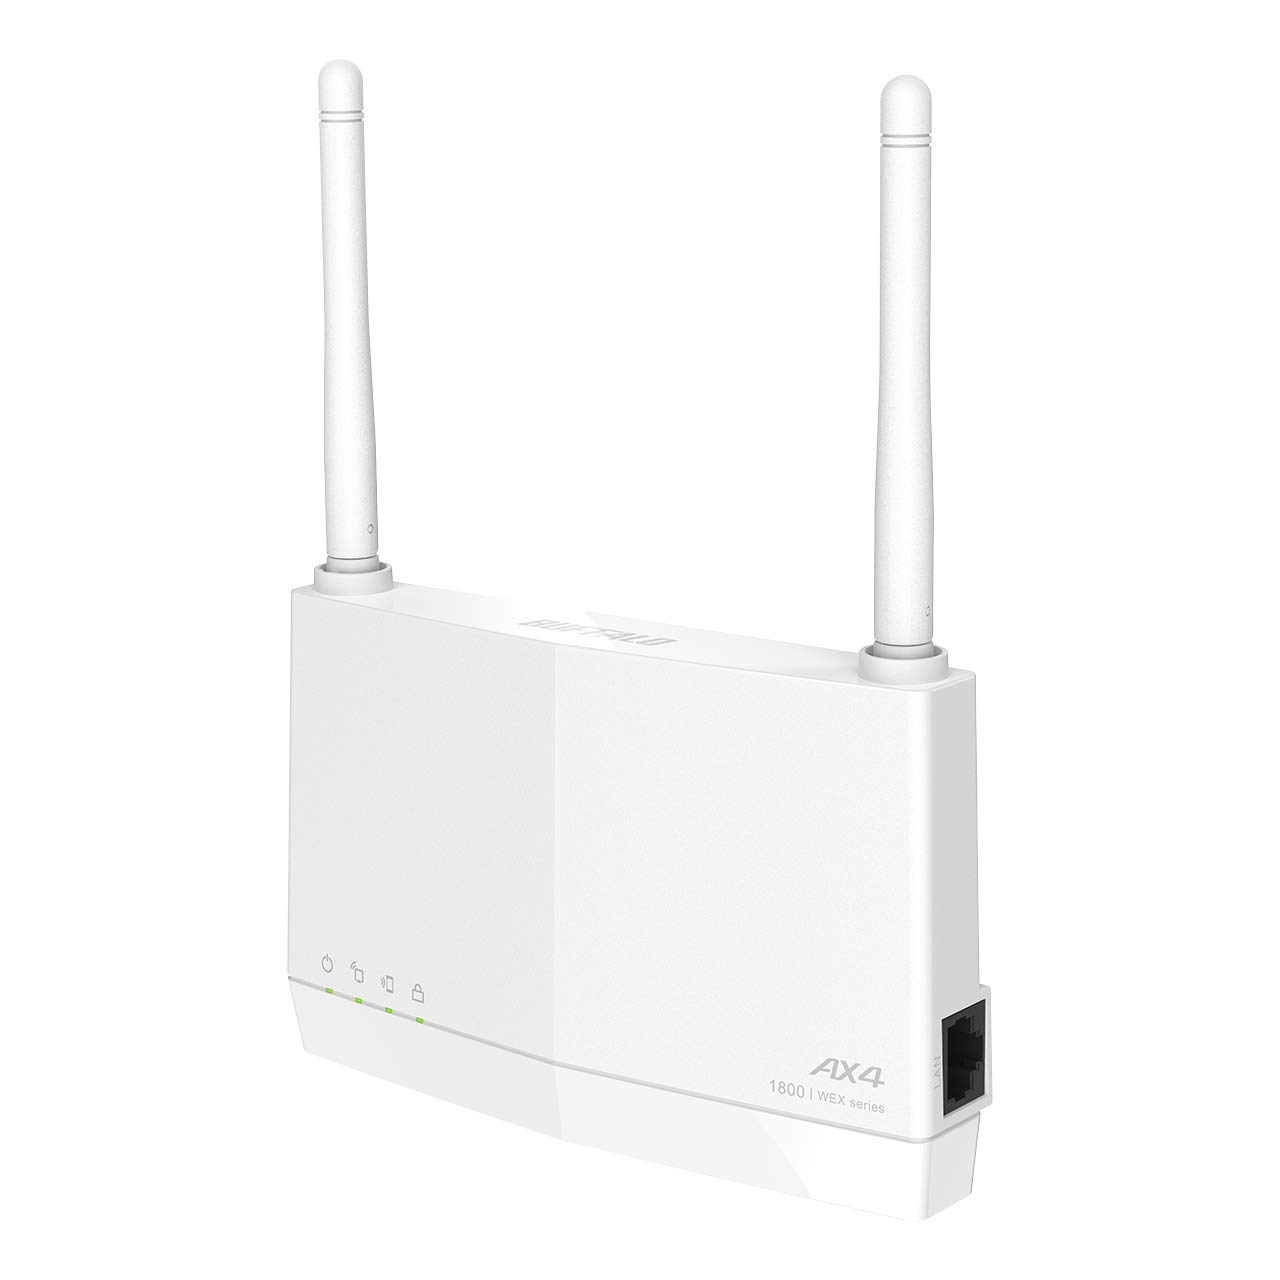 バッファロー 無線LAN 中継機 Wi-Fi6 11ax / 11ac 1201 573Mbps Easy Mesh 対応 コンセント直挿し/据え置き可能 日本メーカー ドコモ5Gホームルーター/ iPhone14 / 13 / SE(第二世代) / Nintendo Switch メーカー動作確認済み エコパッケージ WEX-1800AX4EA/N